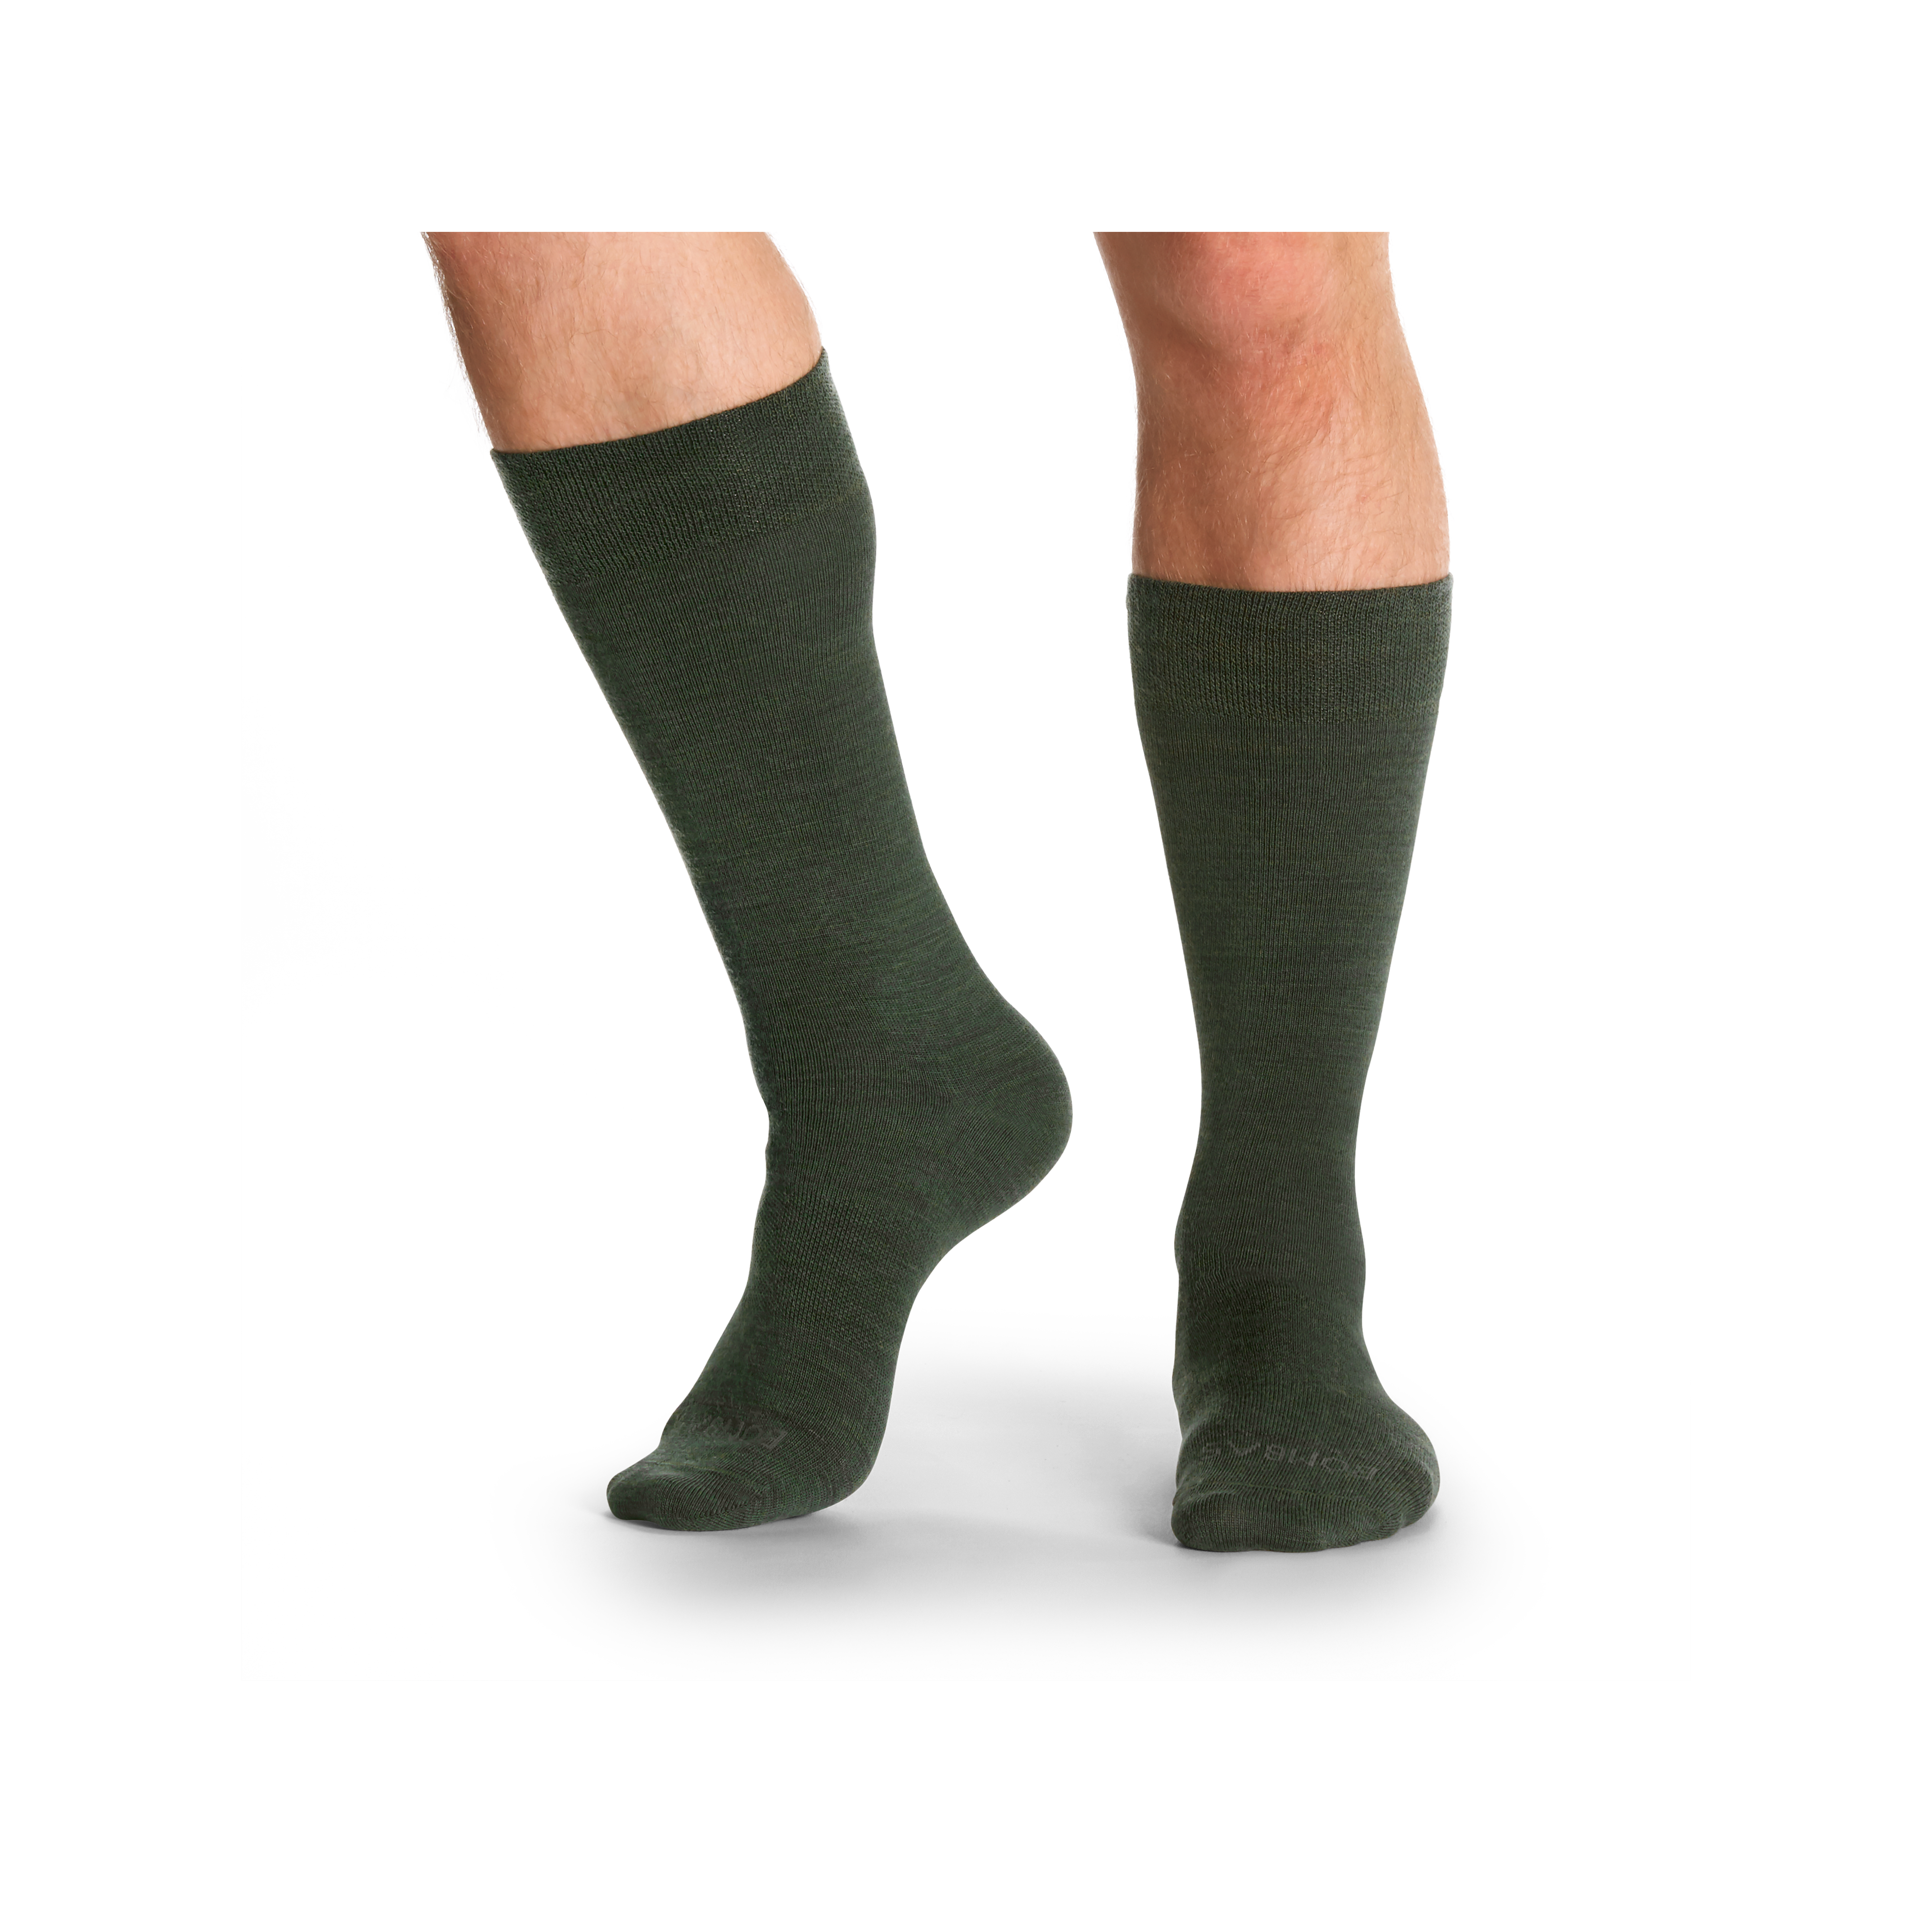 Moisture-Wicking Merino Wool Active Dress Socks for Men